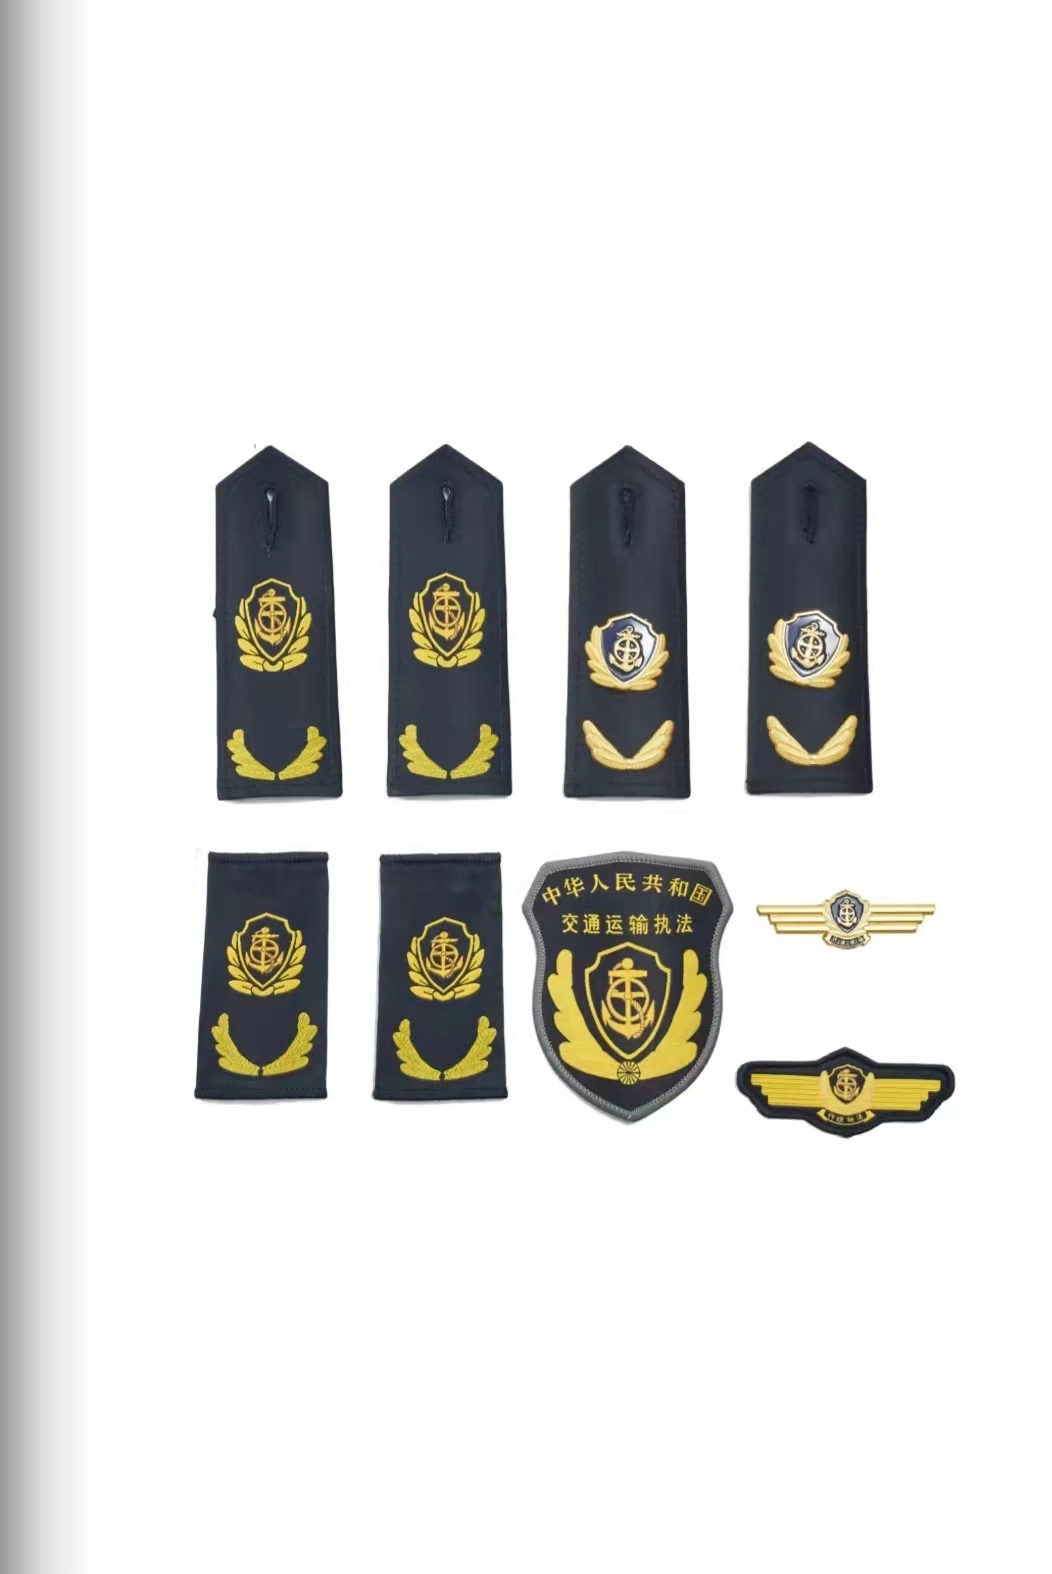 包头六部门统一交通运输执法服装标志